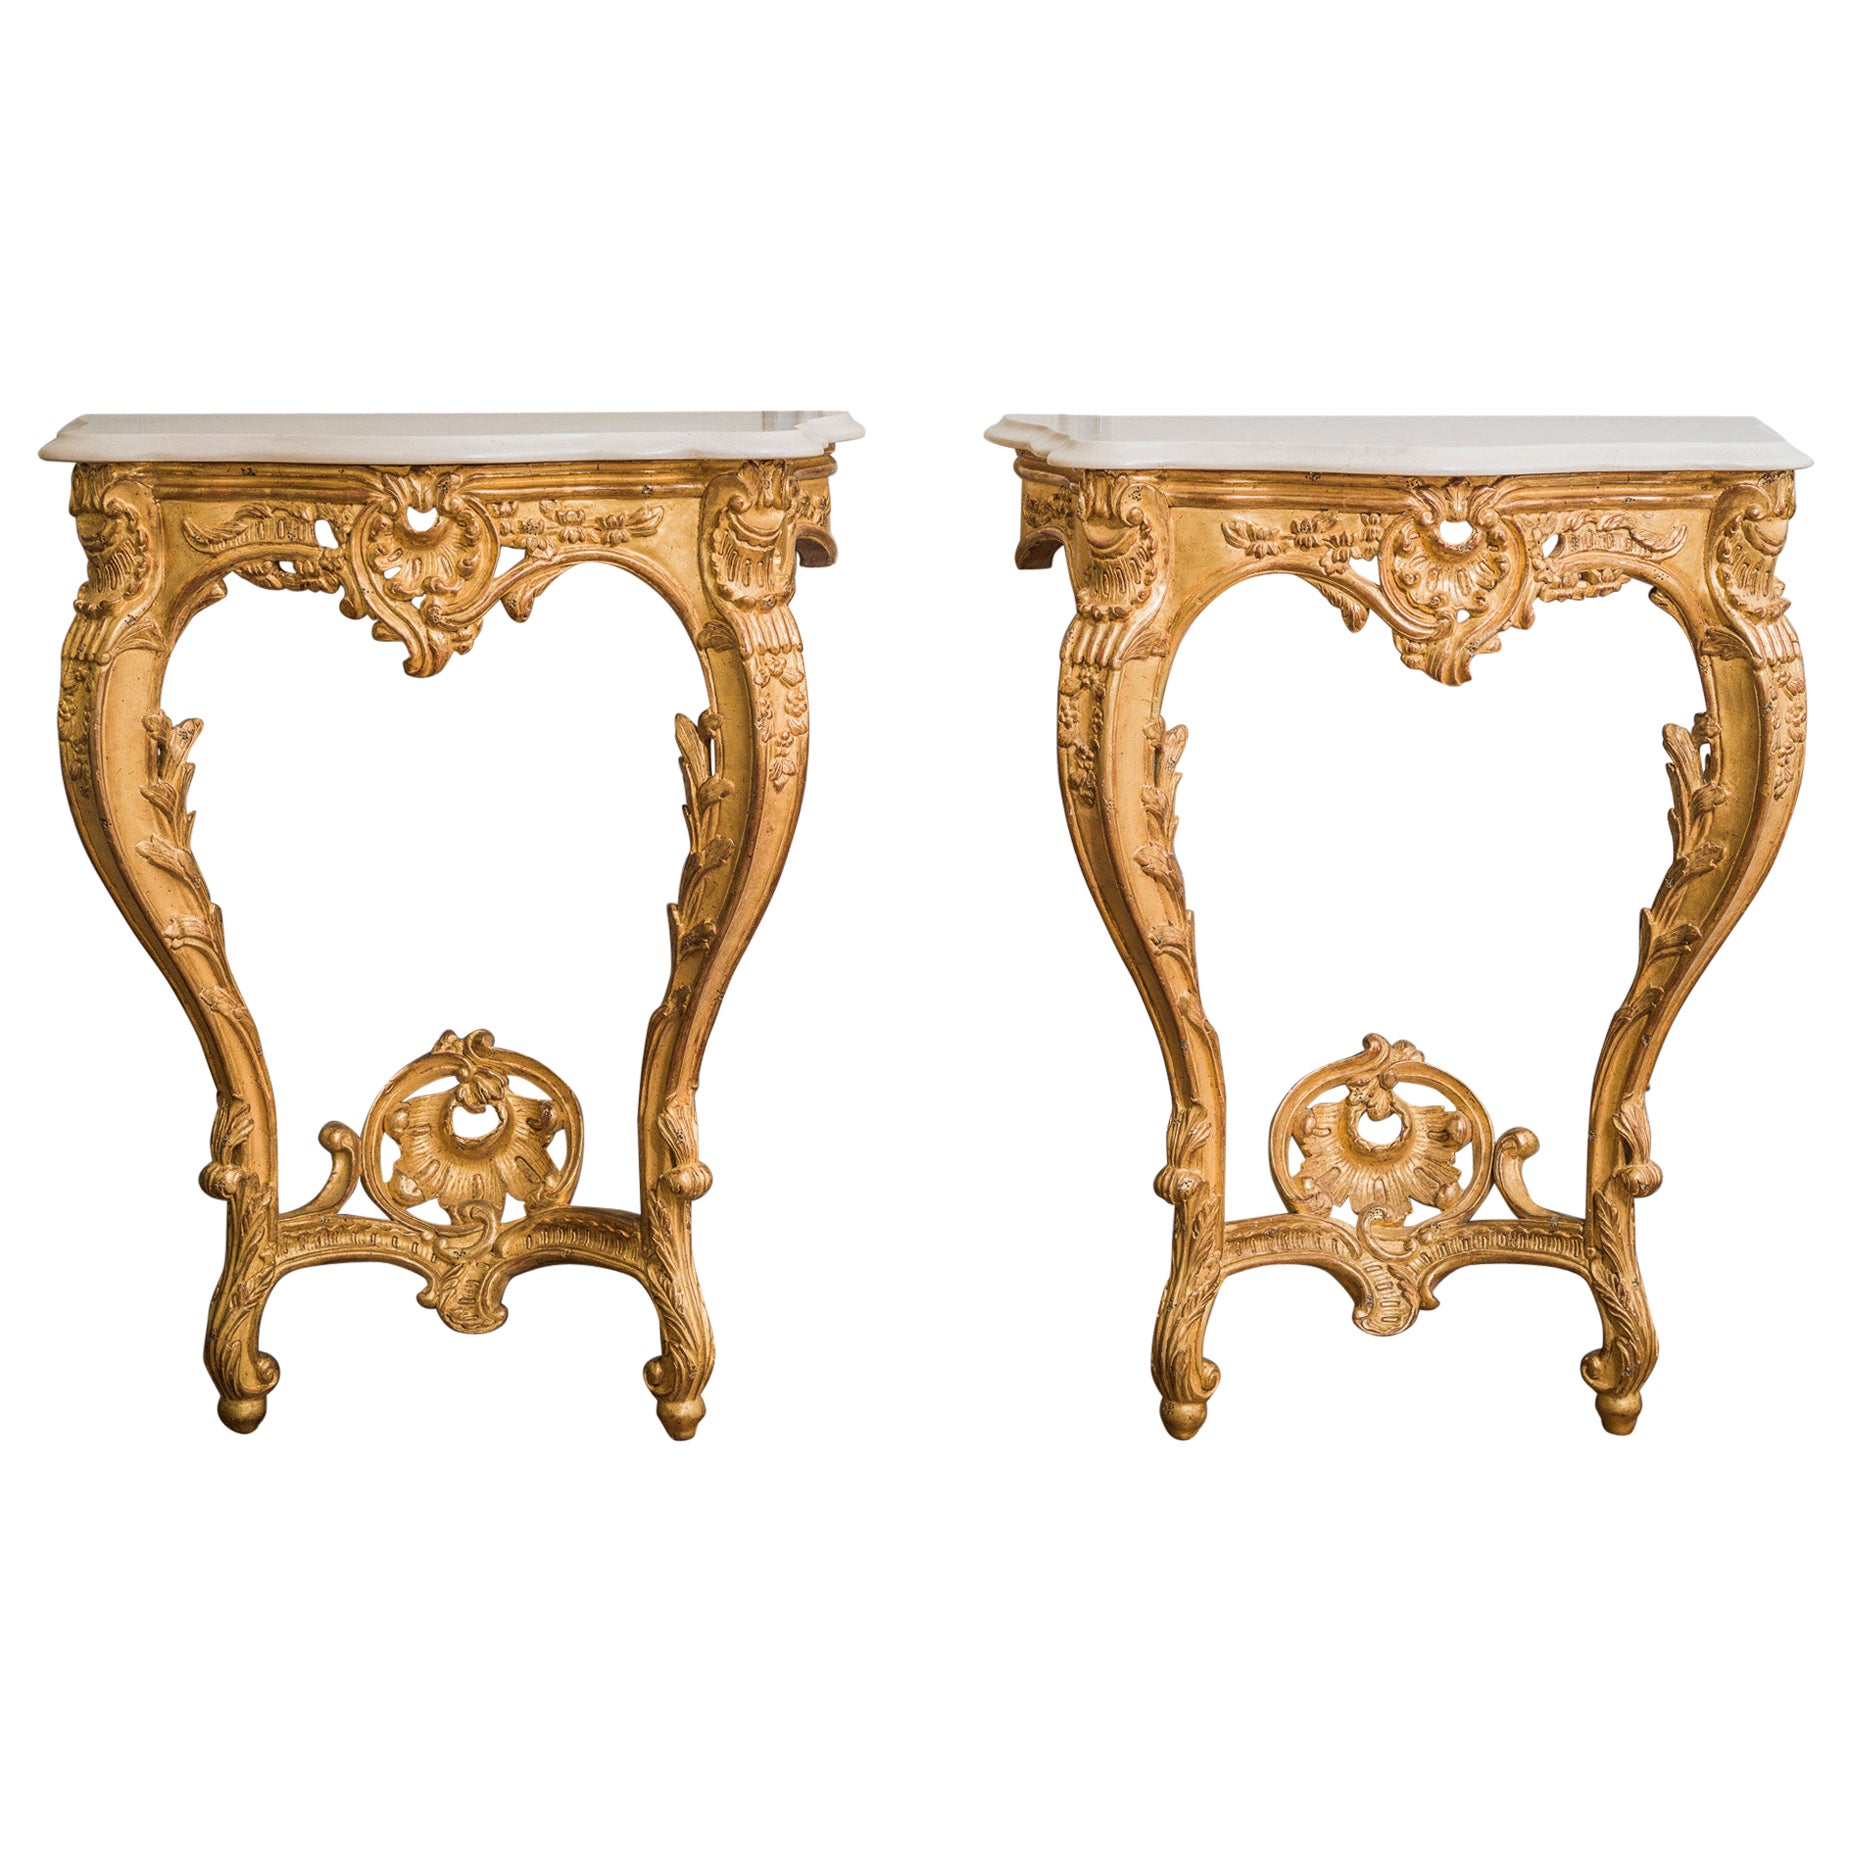 Paire de consoles de style Louis XV en bois doré sculpté à la main